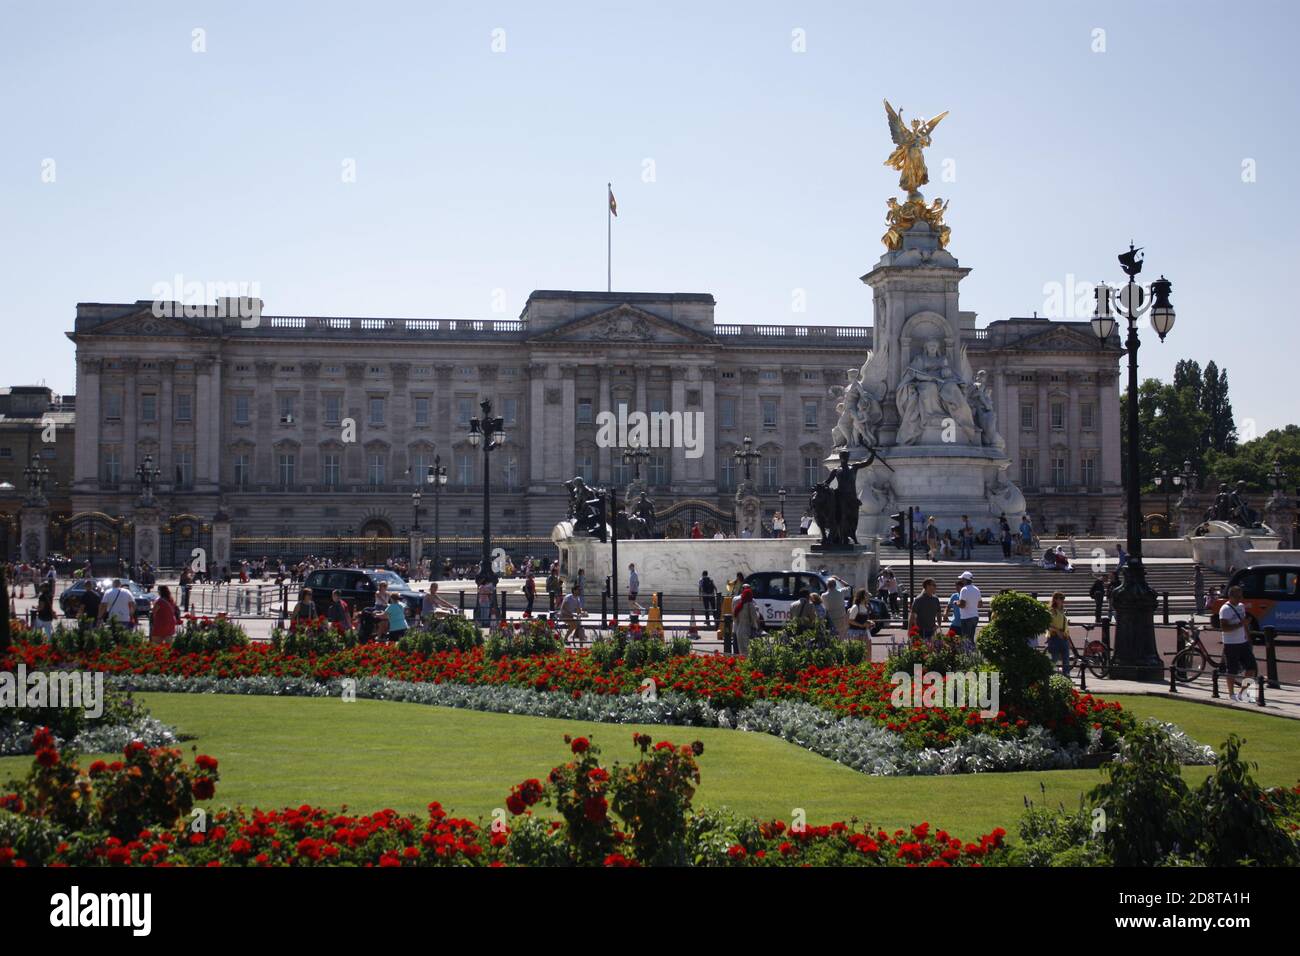 Buckingham Palace exterior on sunny day, London, UK Stock Photo